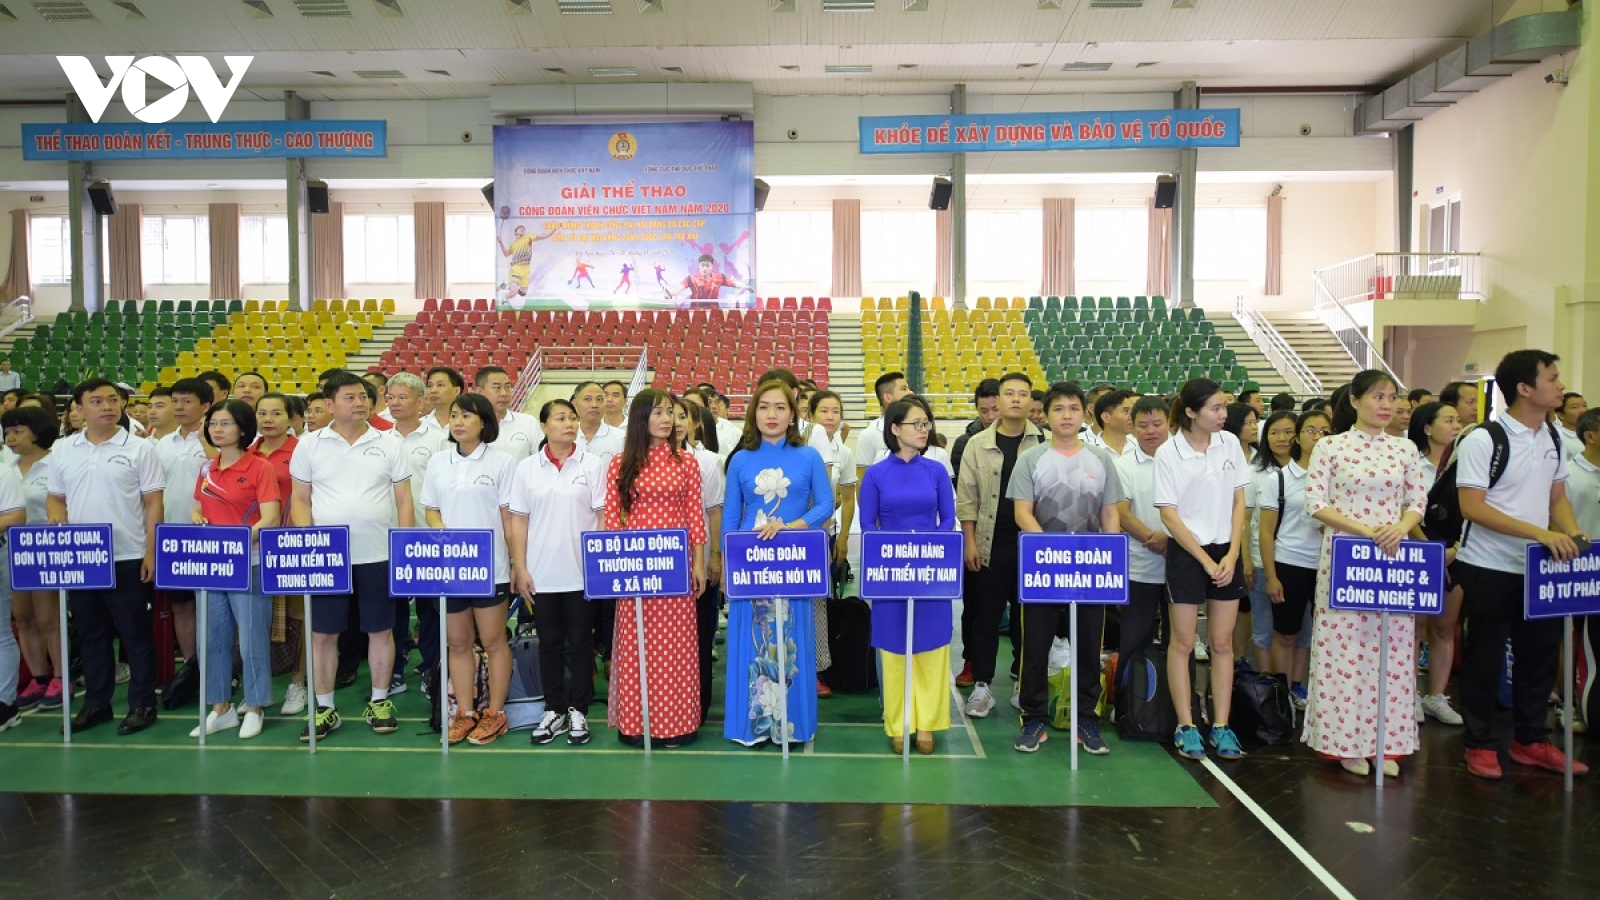 Khai mạc giải thể thao công đoàn viên chức Việt Nam 2020 